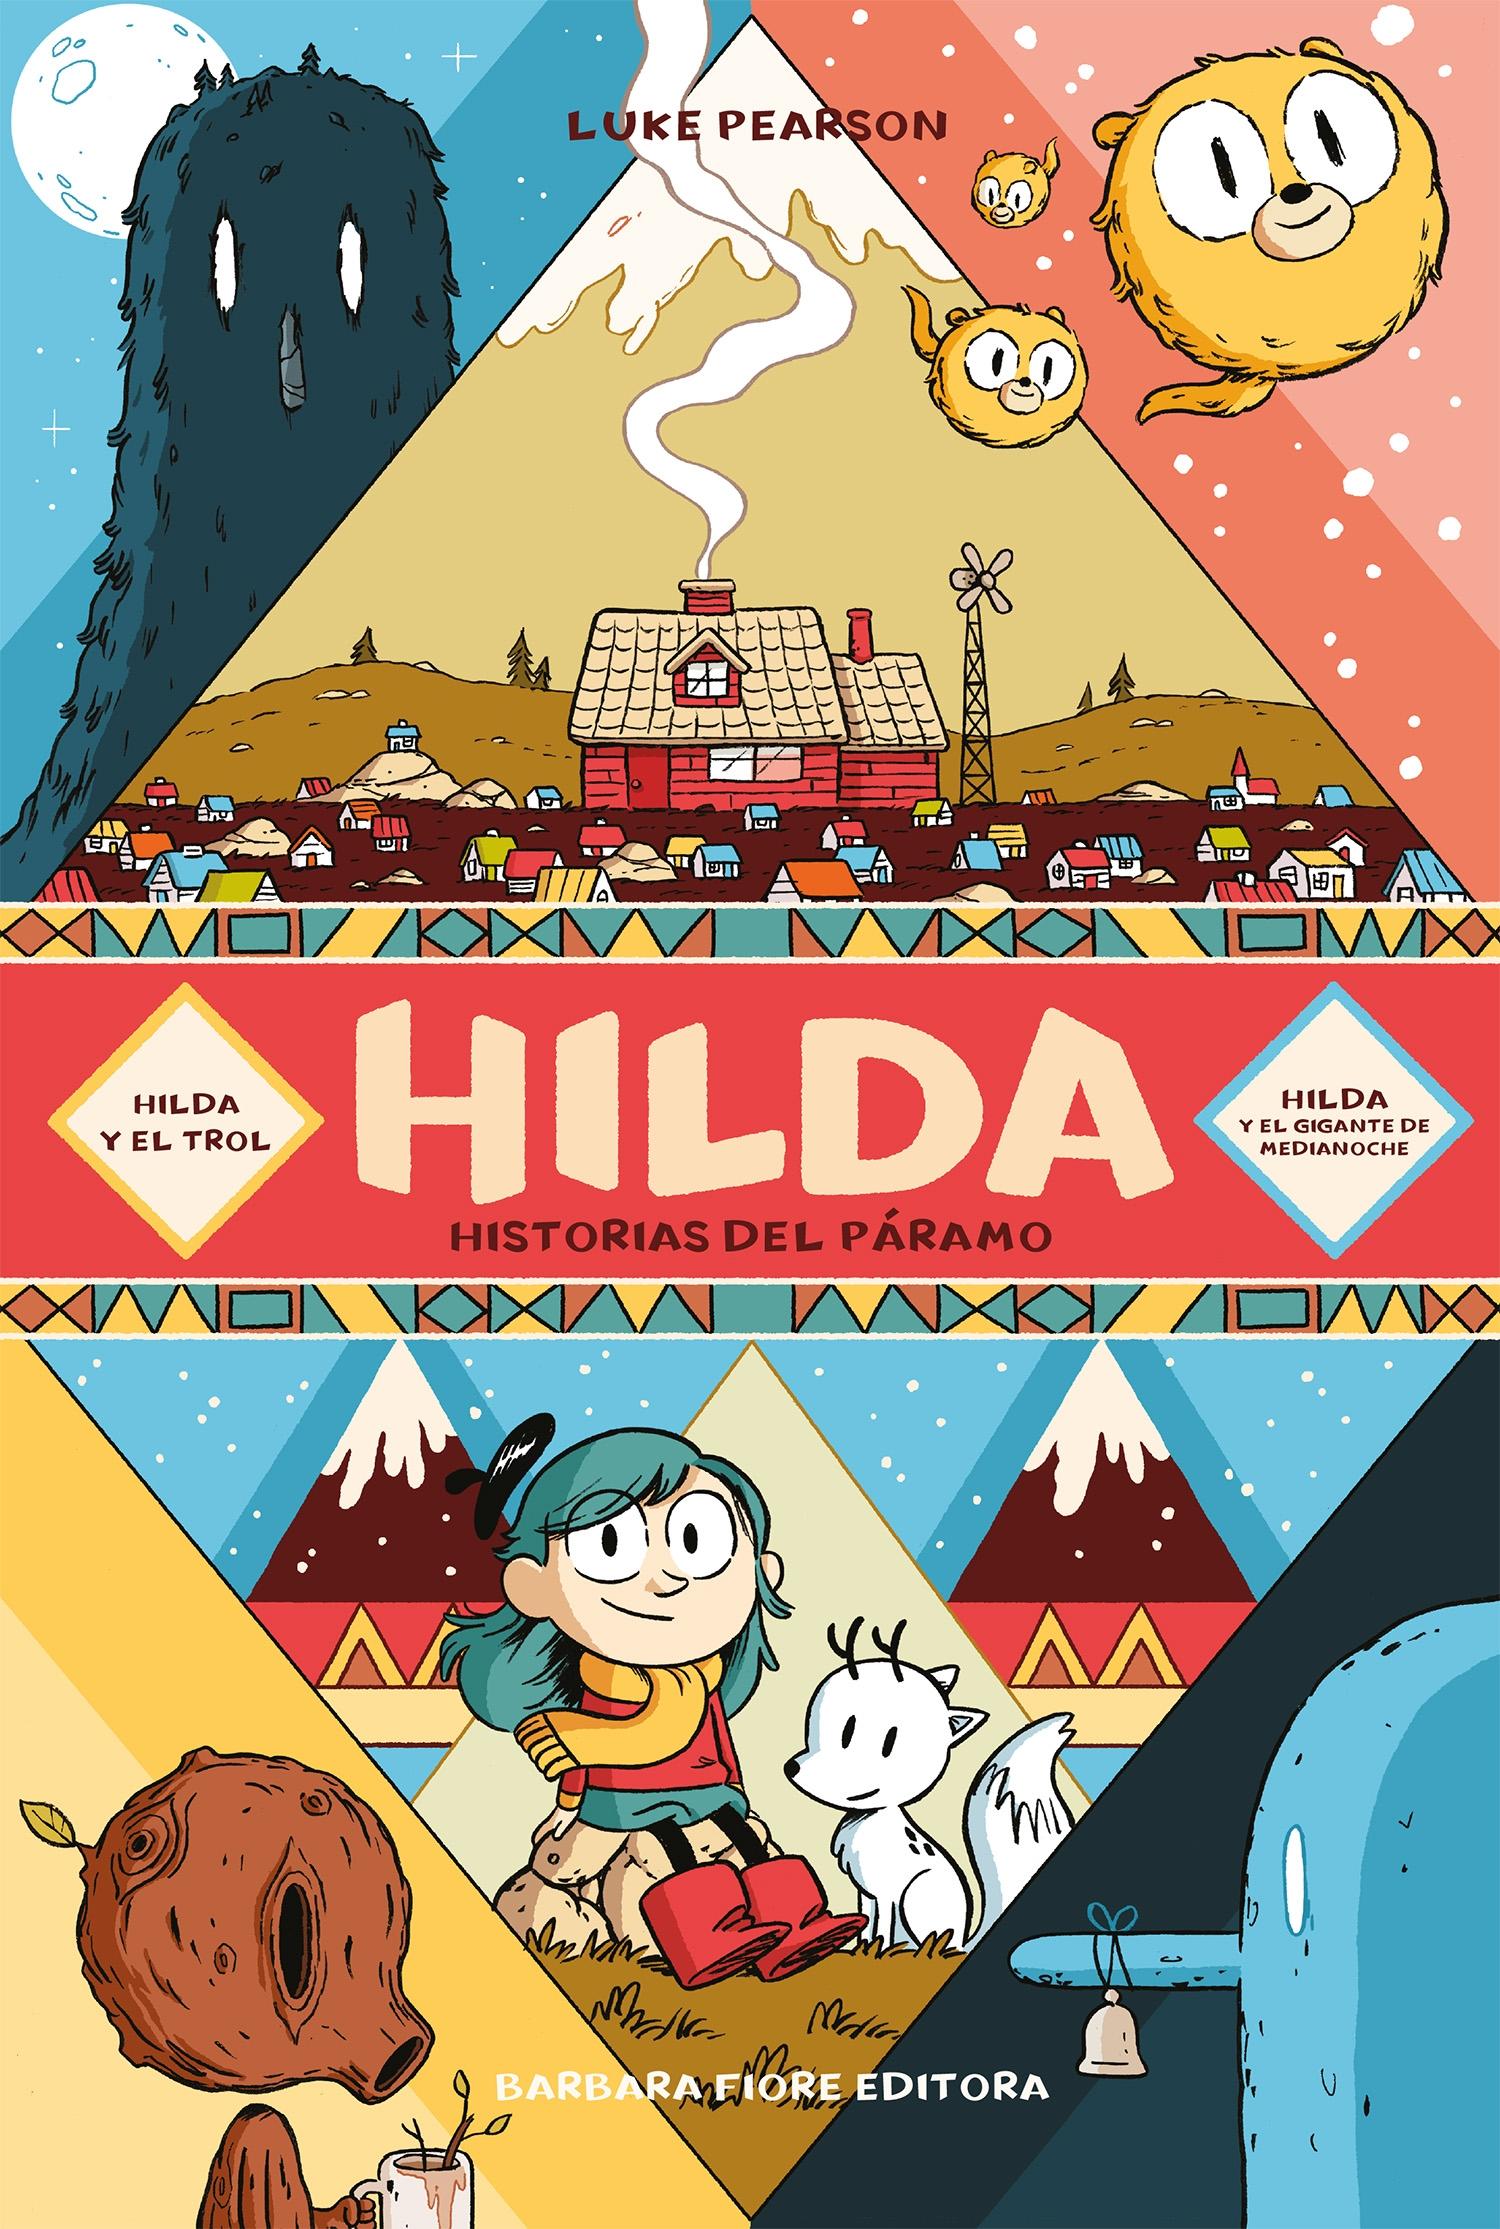 Hilda. Historias del Páramo "Hilda y el Trol | Hilda y el Gigante de Media Noche"